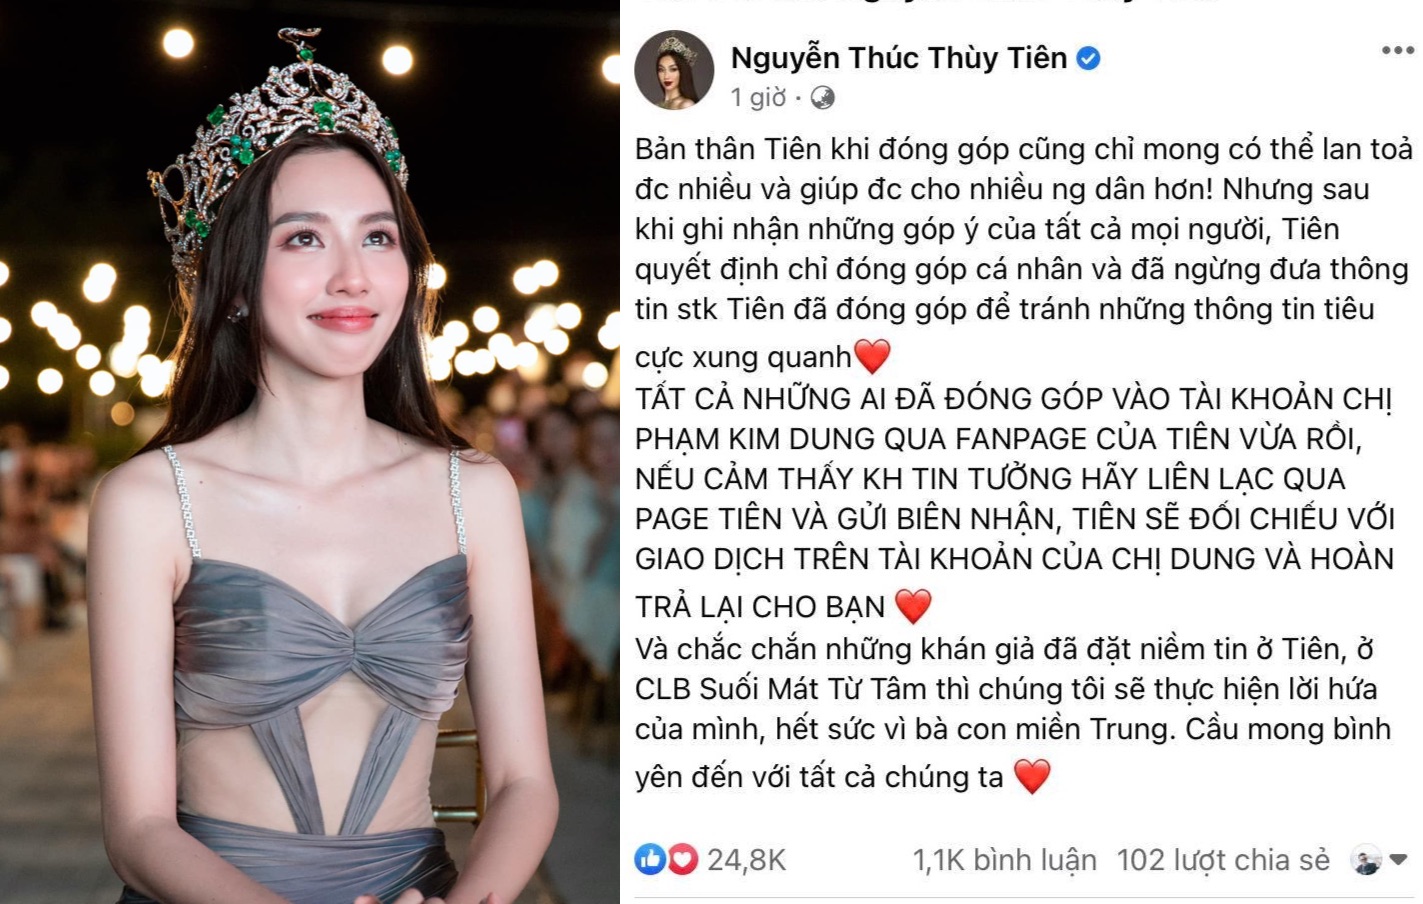 Hoa hậu Thùy Tiên ngừng kêu gọi ủng hộ miền Trung do ý kiến trái chiều